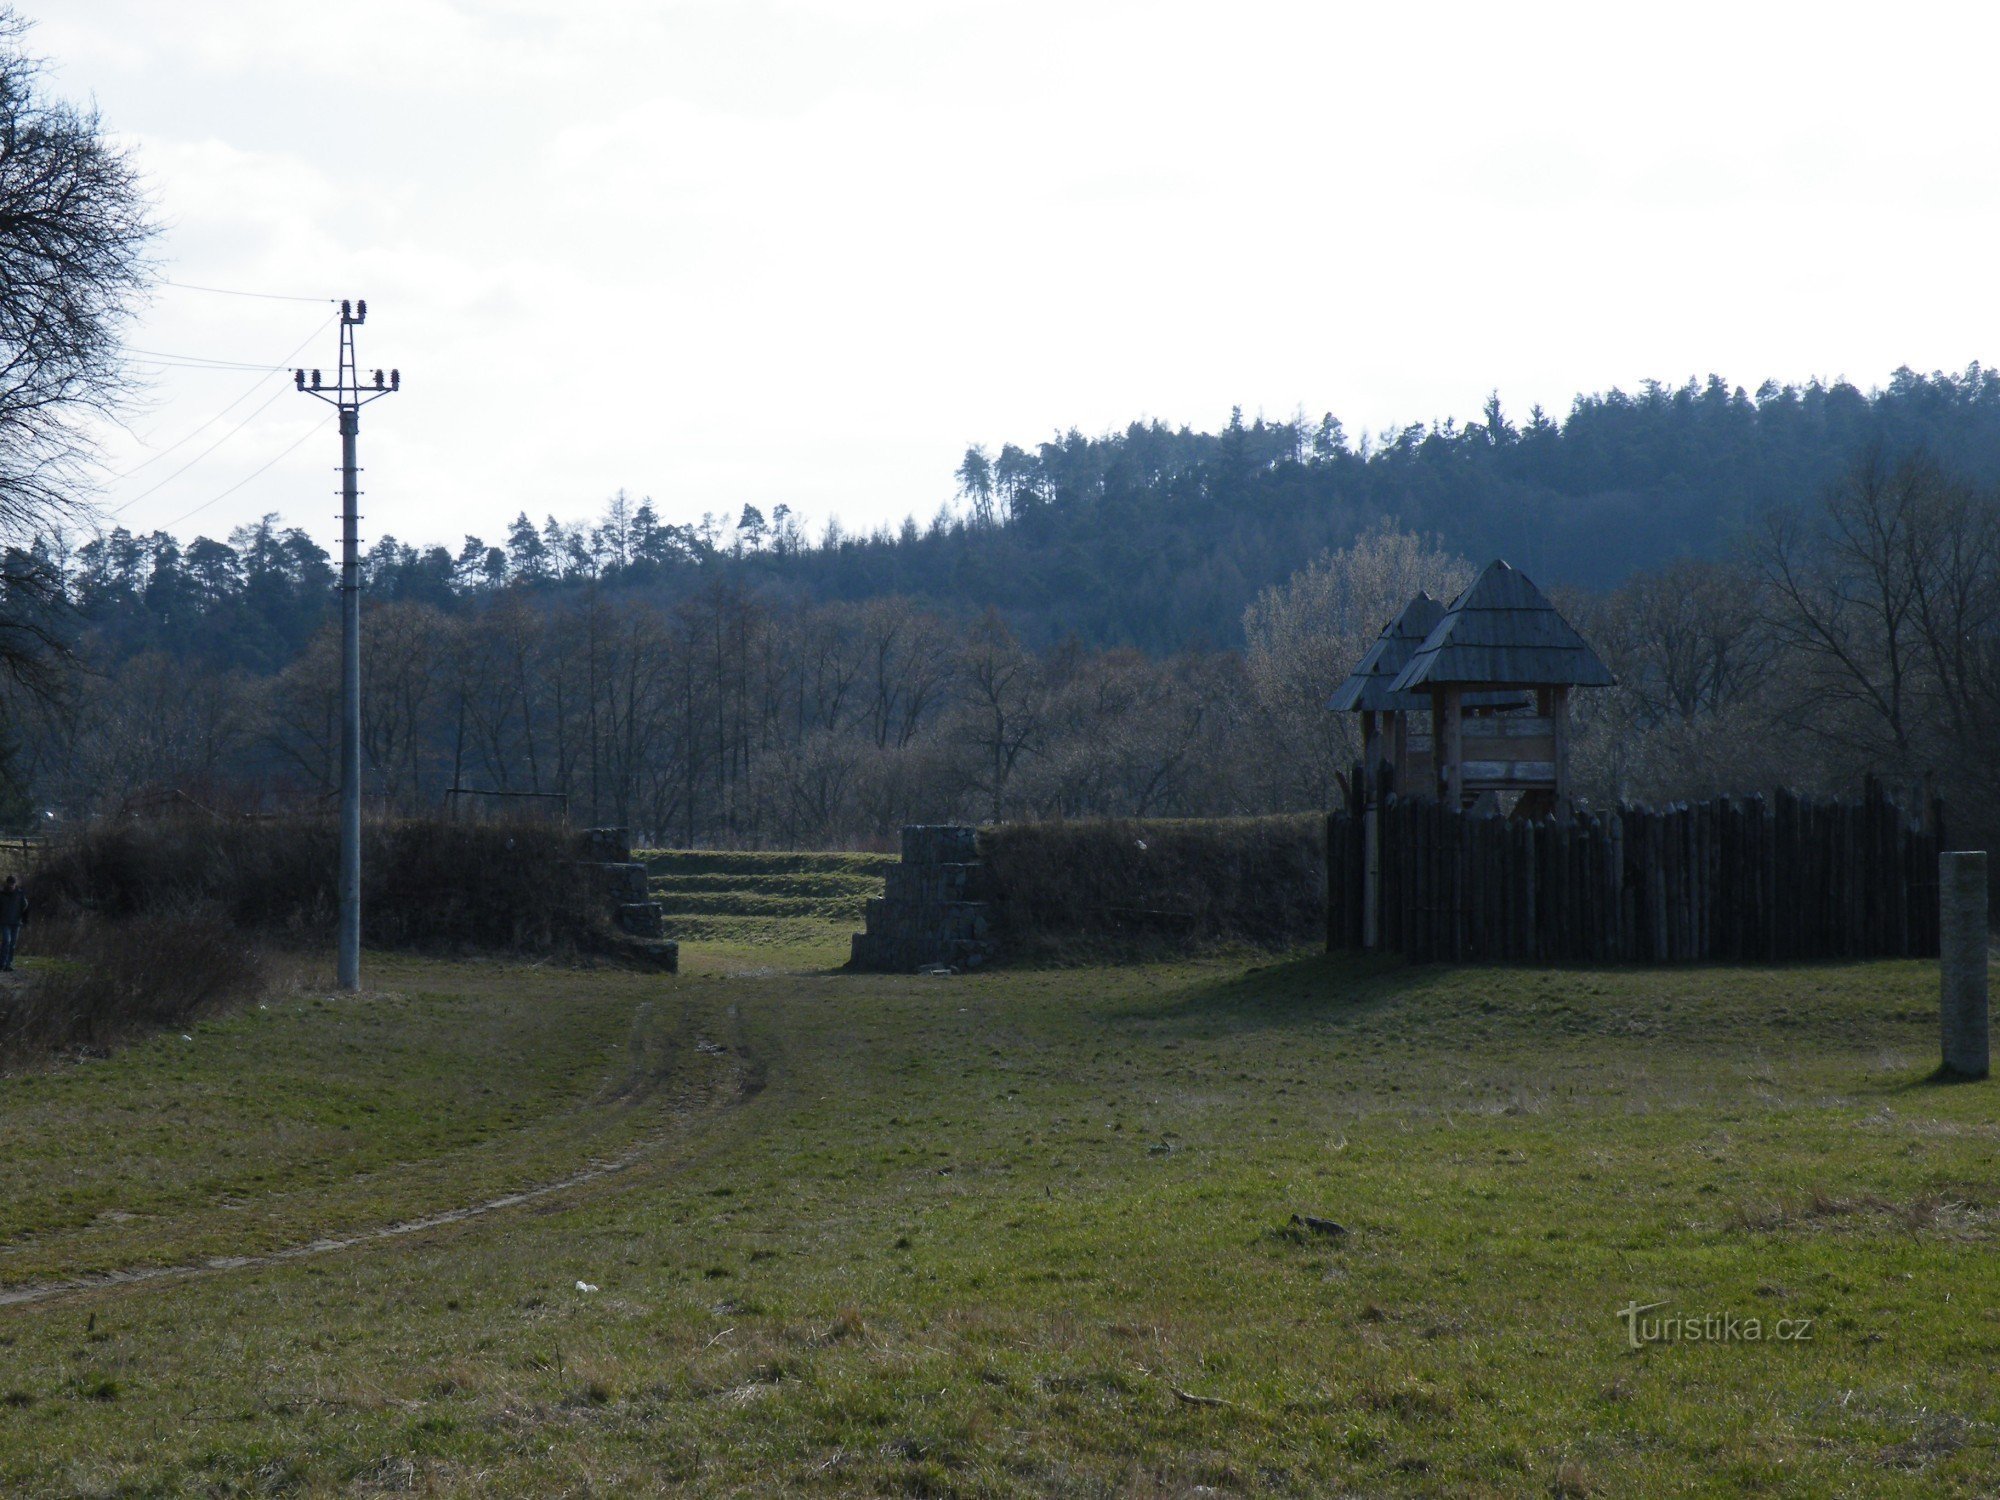 Skøjtebane og fæstning